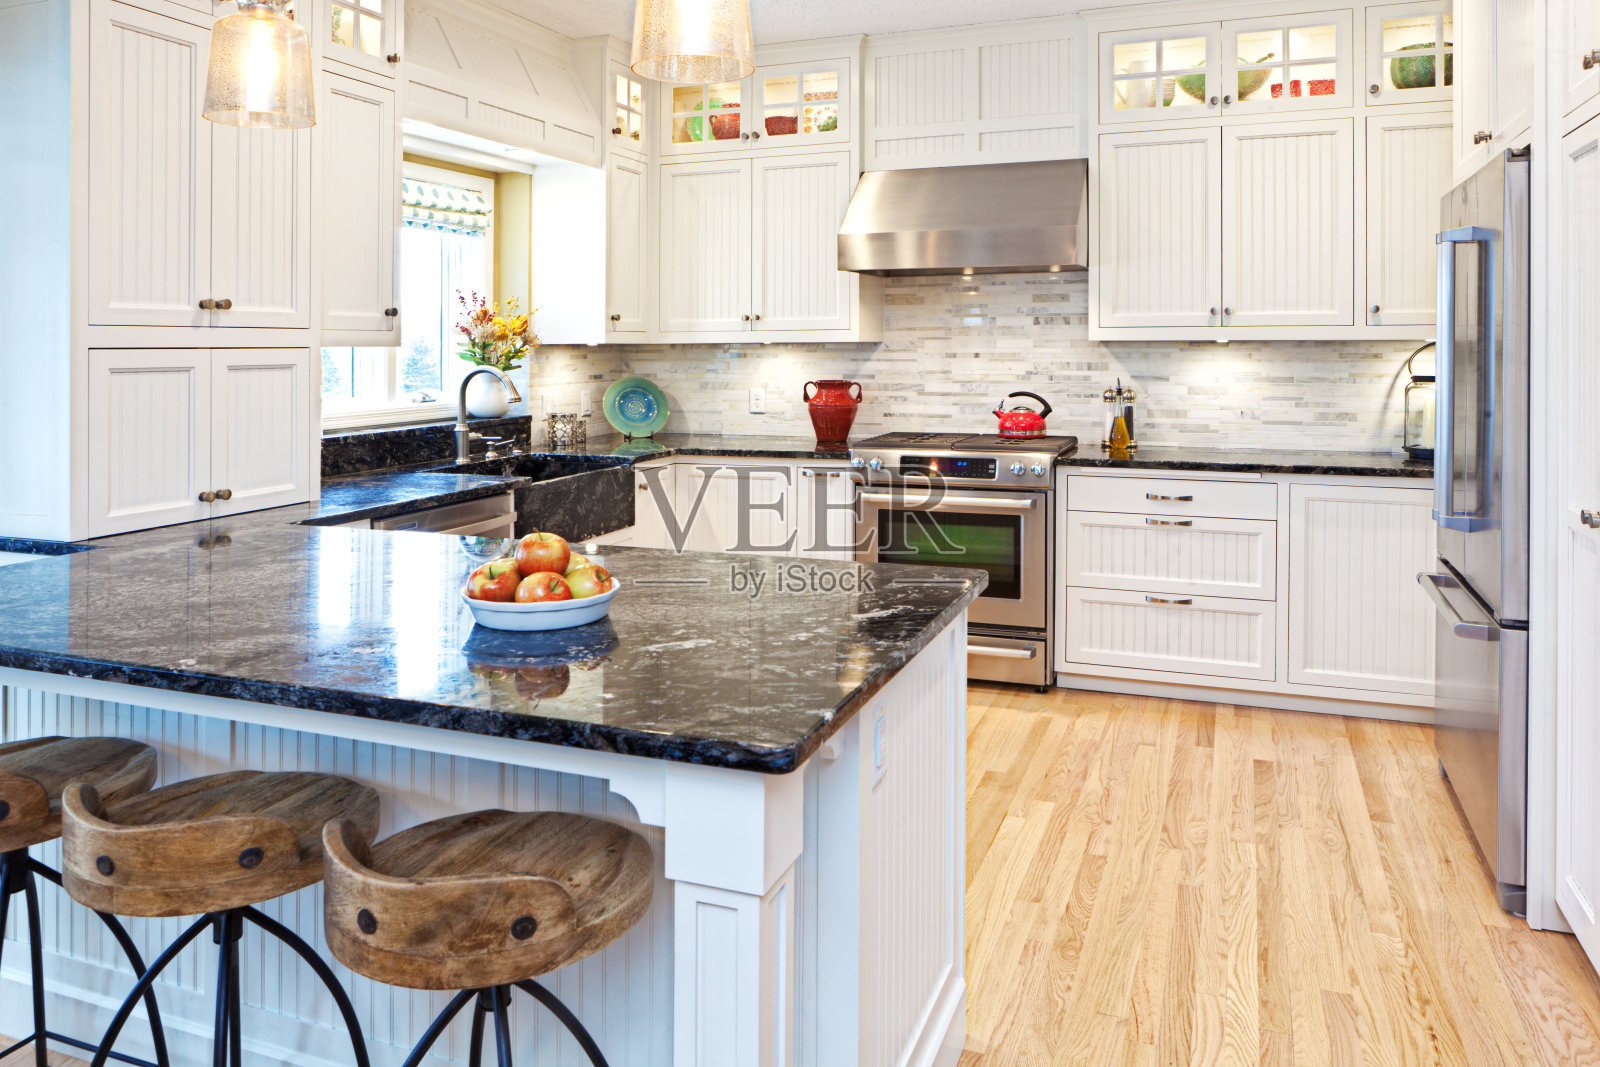 开放式概念家庭厨房改造改进和附加室内设计照片摄影图片